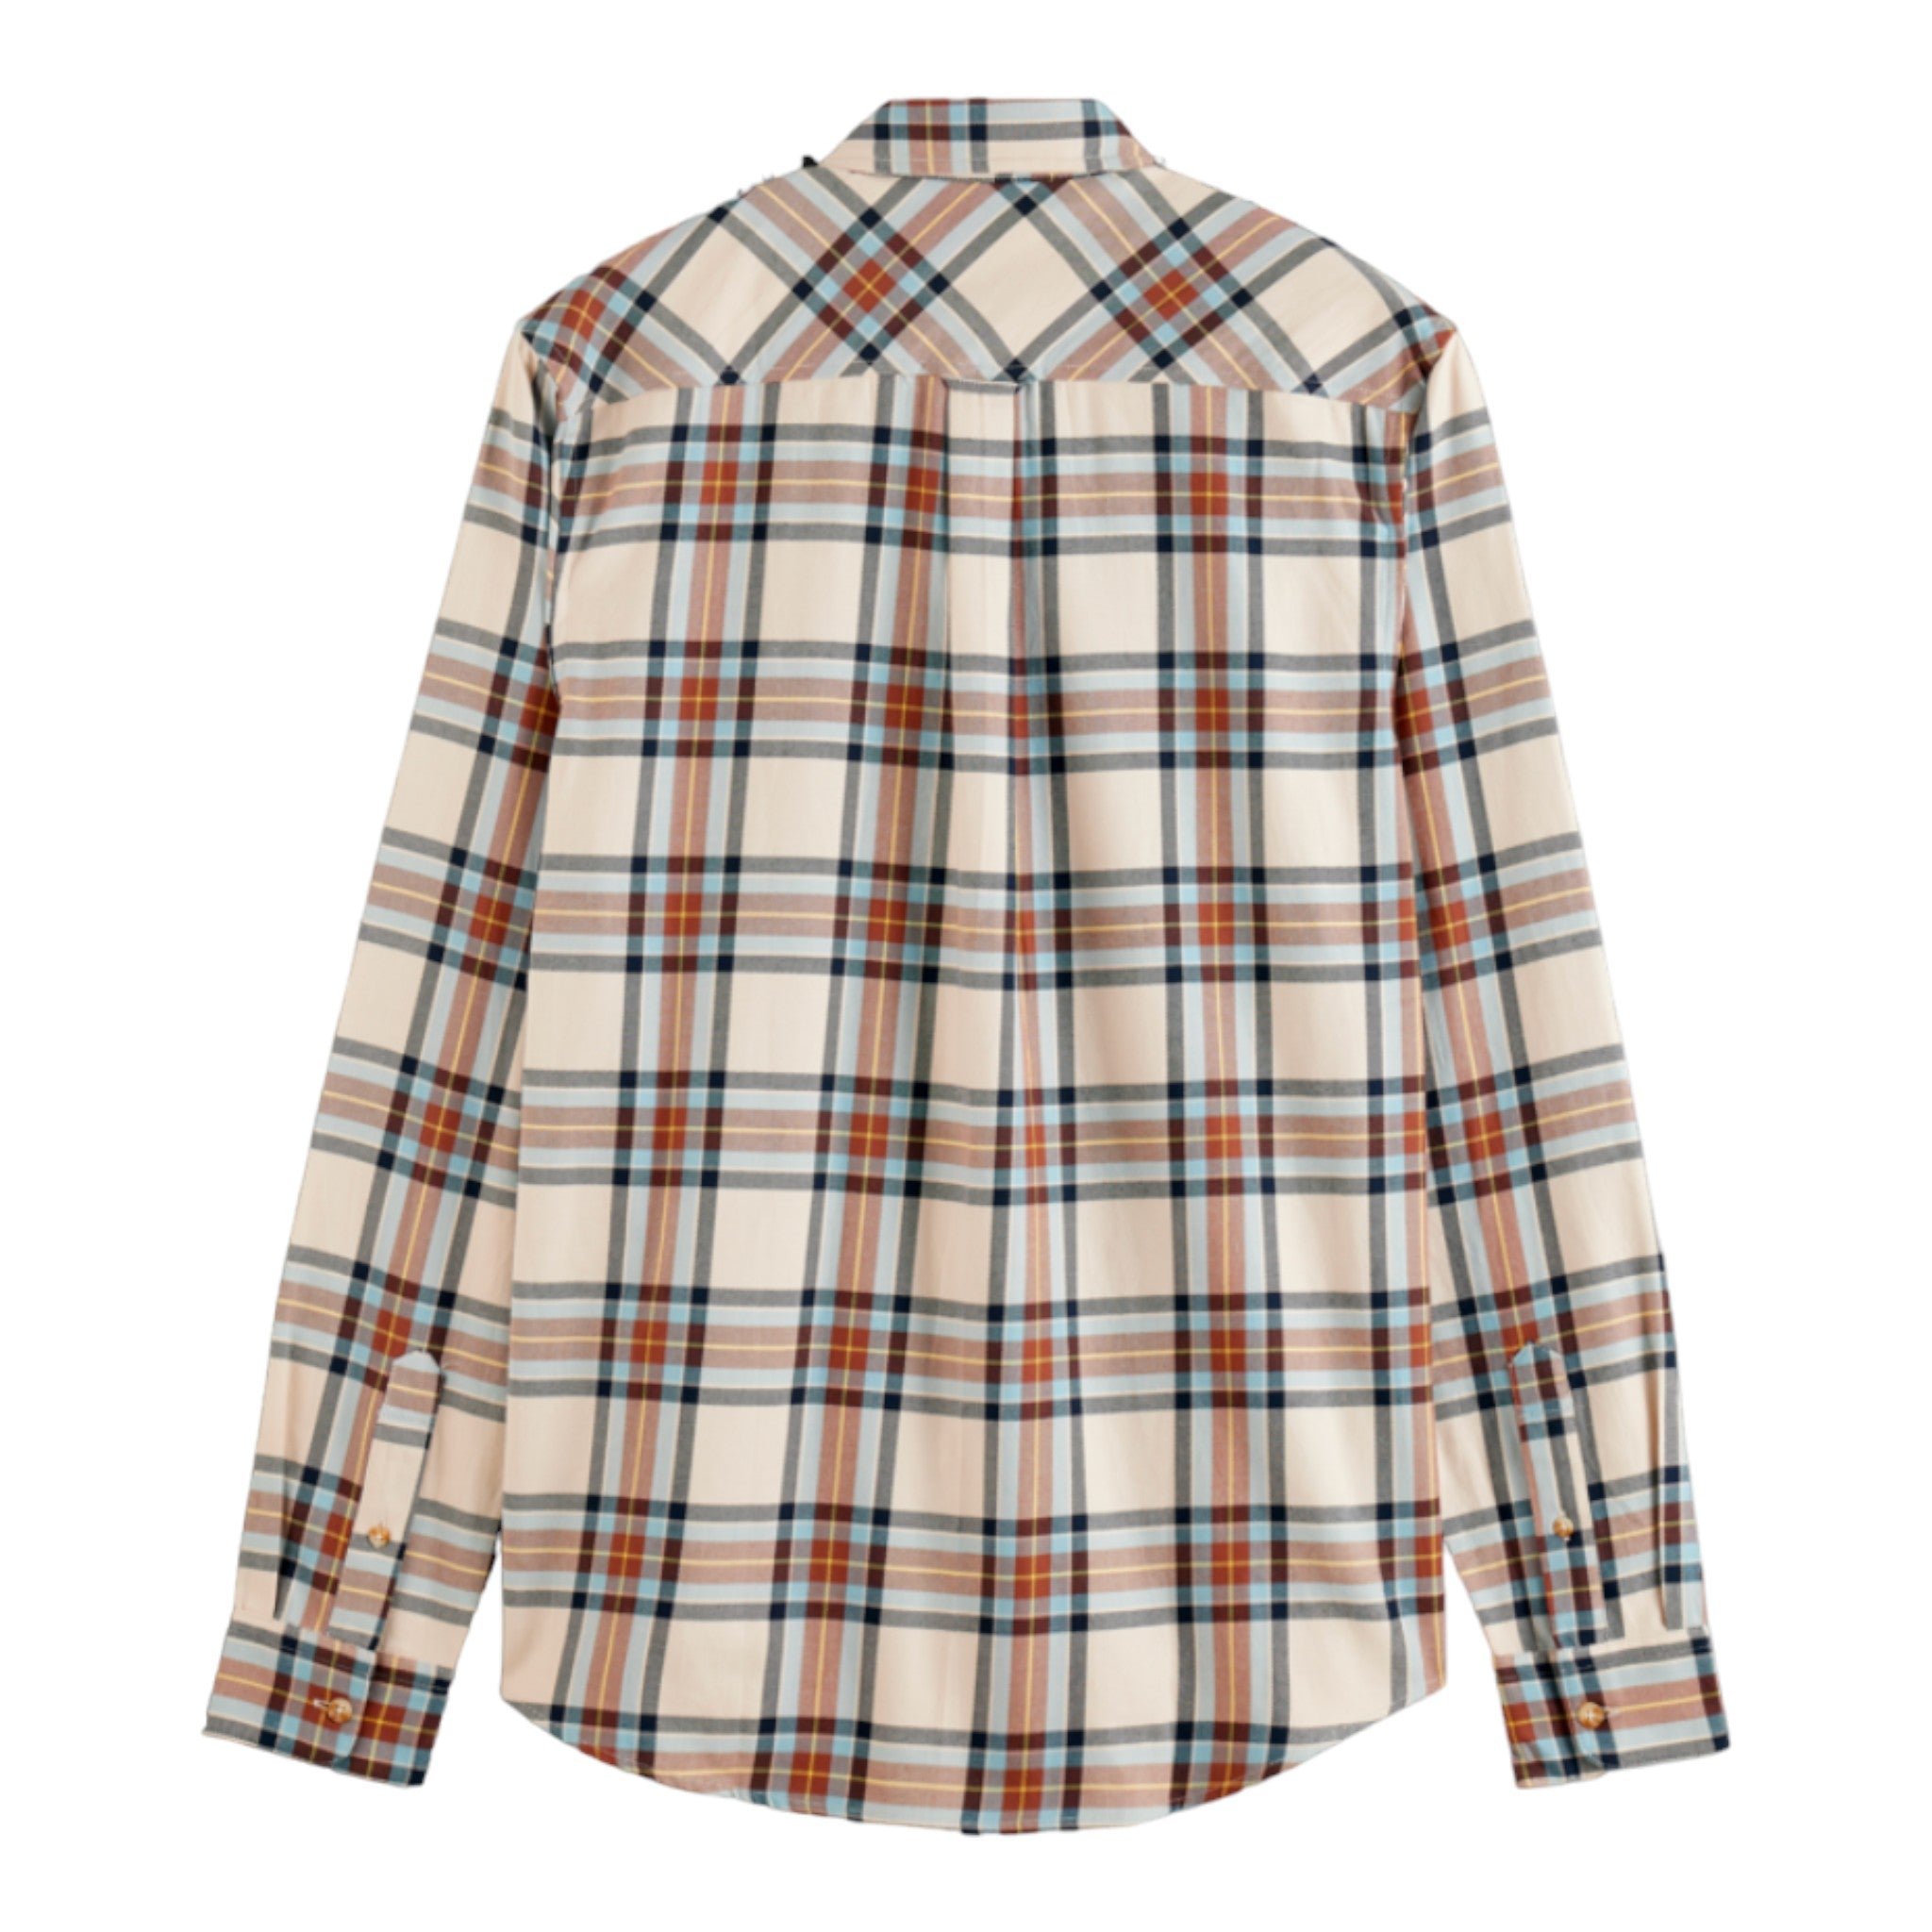 Scotch & Soda - Yarn Dye Flannel Check Shirt - Beige Check